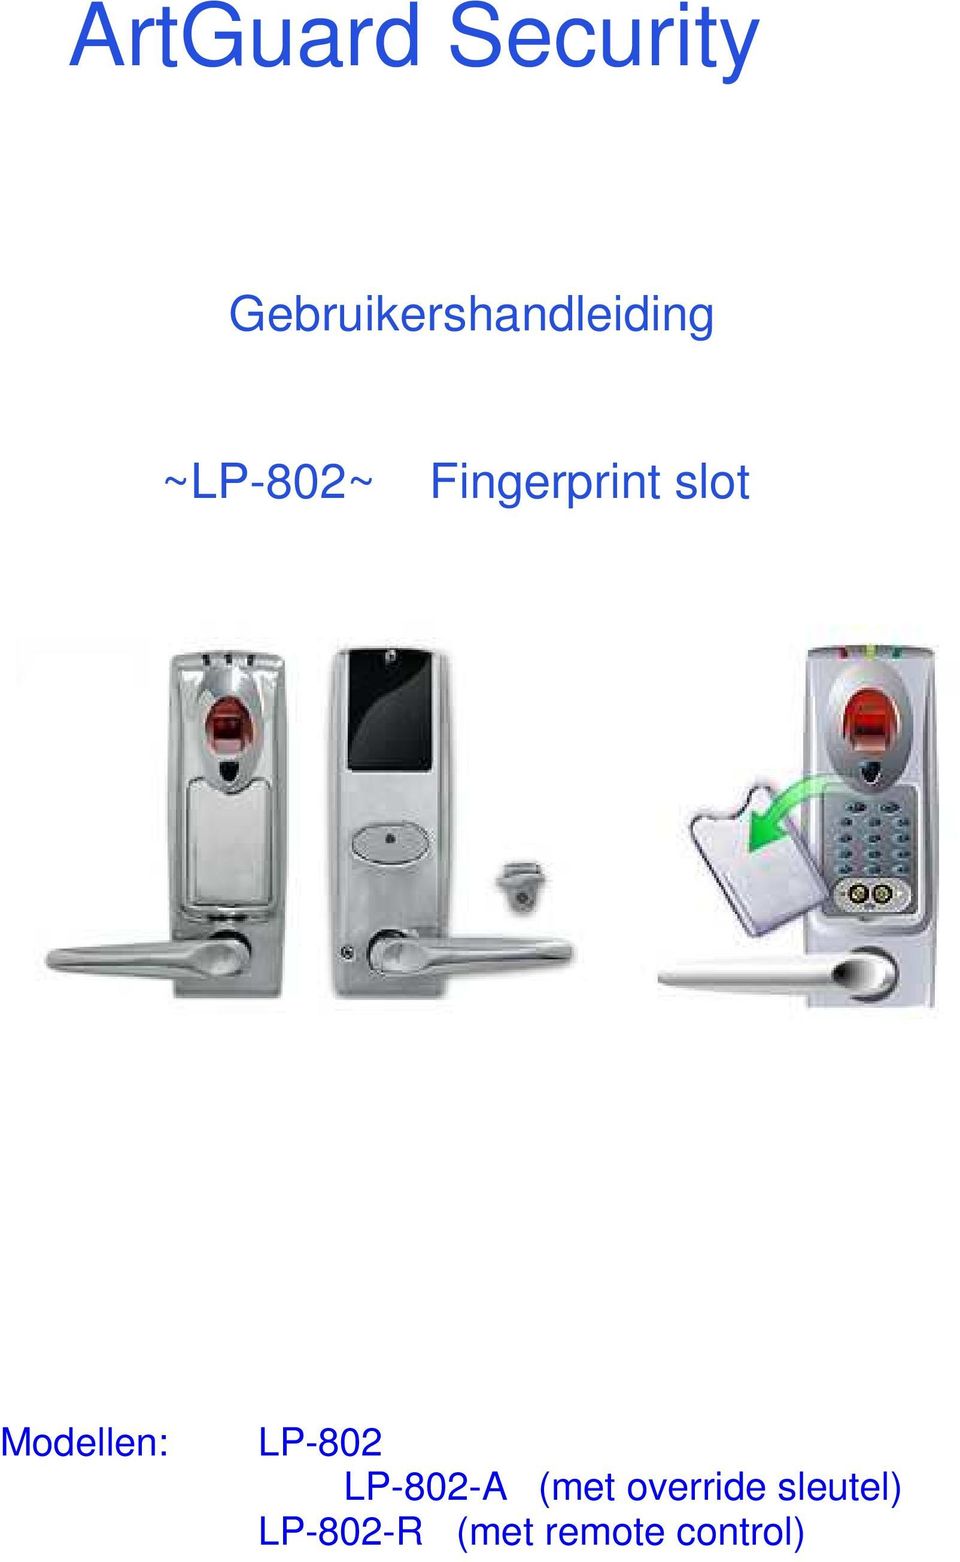 Fingerprint slot Modellen: LP-802